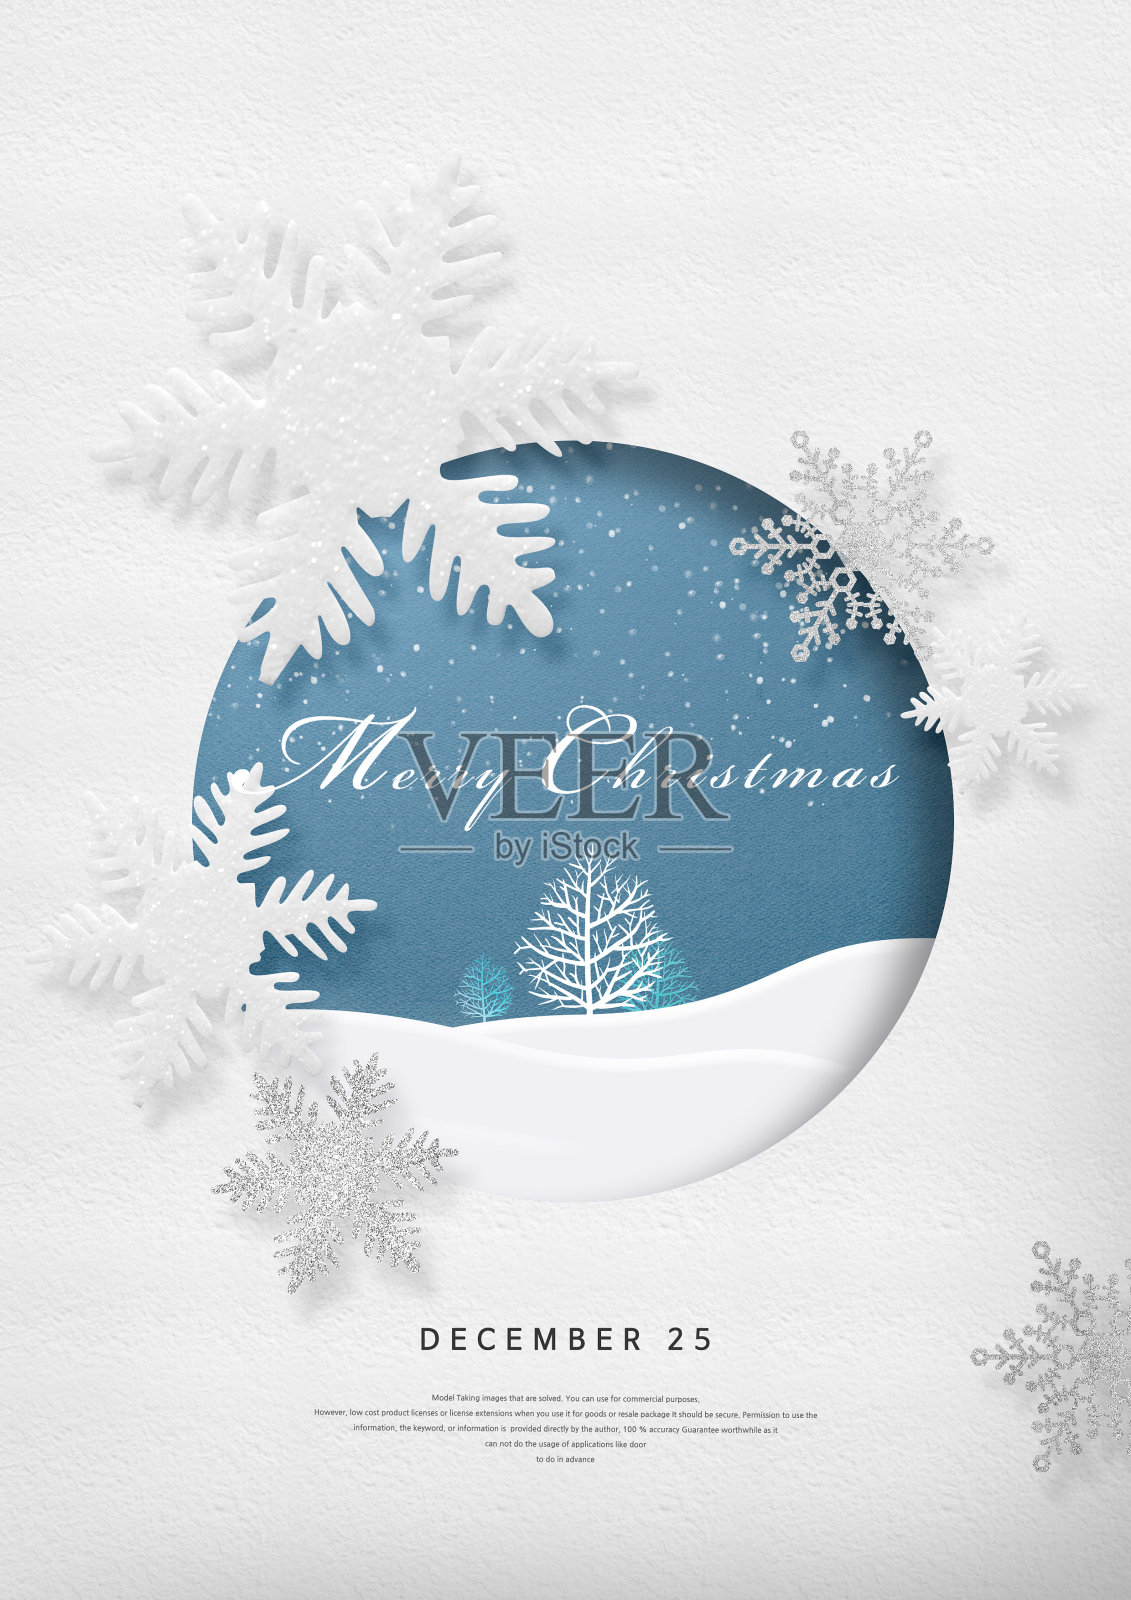 冬天,季节,背景,圣诞节装饰,圣诞节,圣诞贺卡设计模板素材